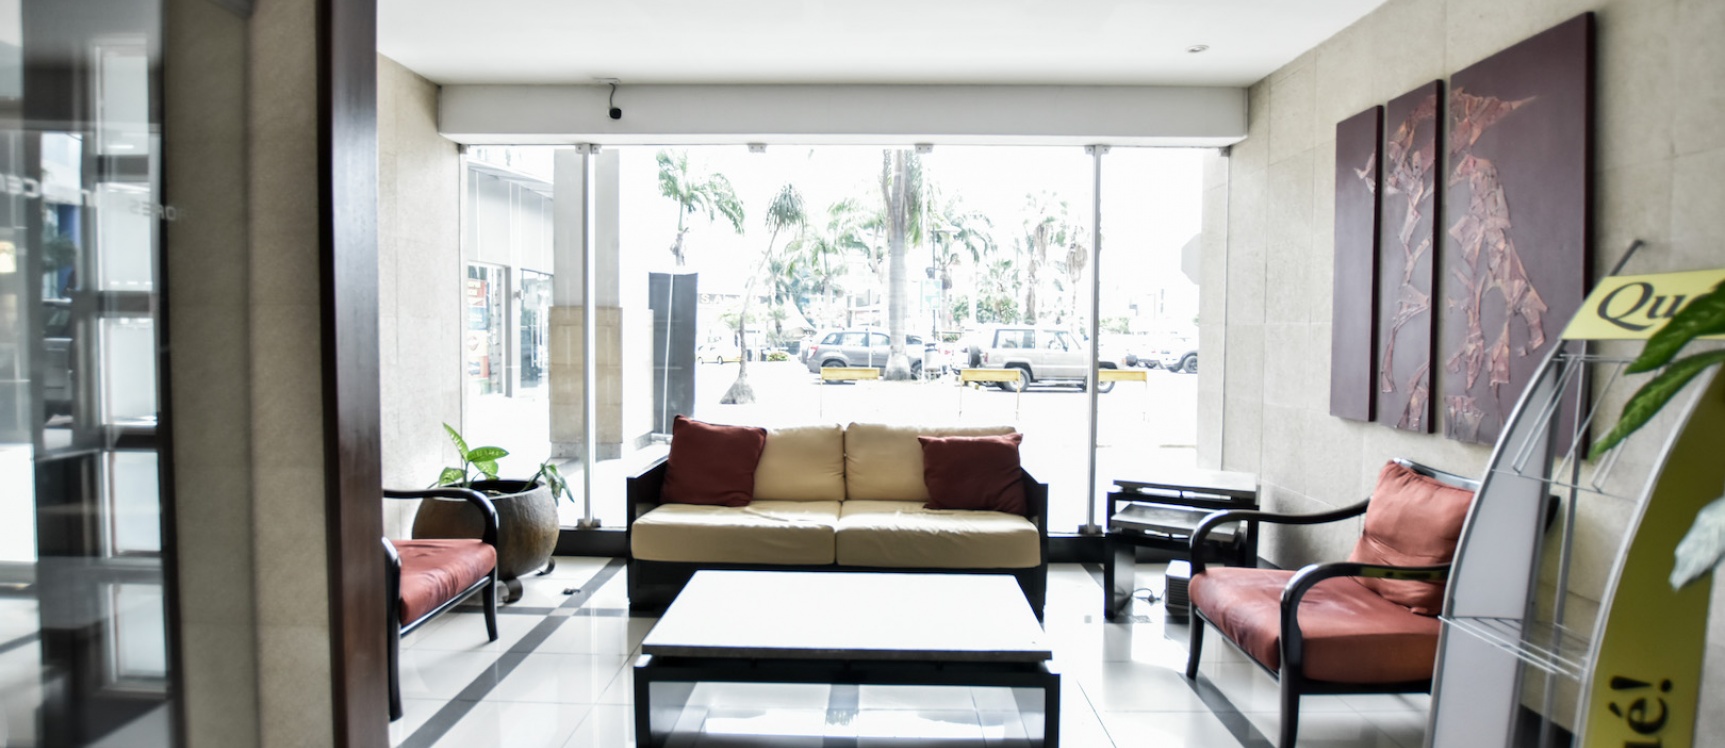 GeoBienes - Alquiler de Oficinas en Edificio Professional Center - Plusvalia Guayaquil Casas de venta y alquiler Inmobiliaria Ecuador